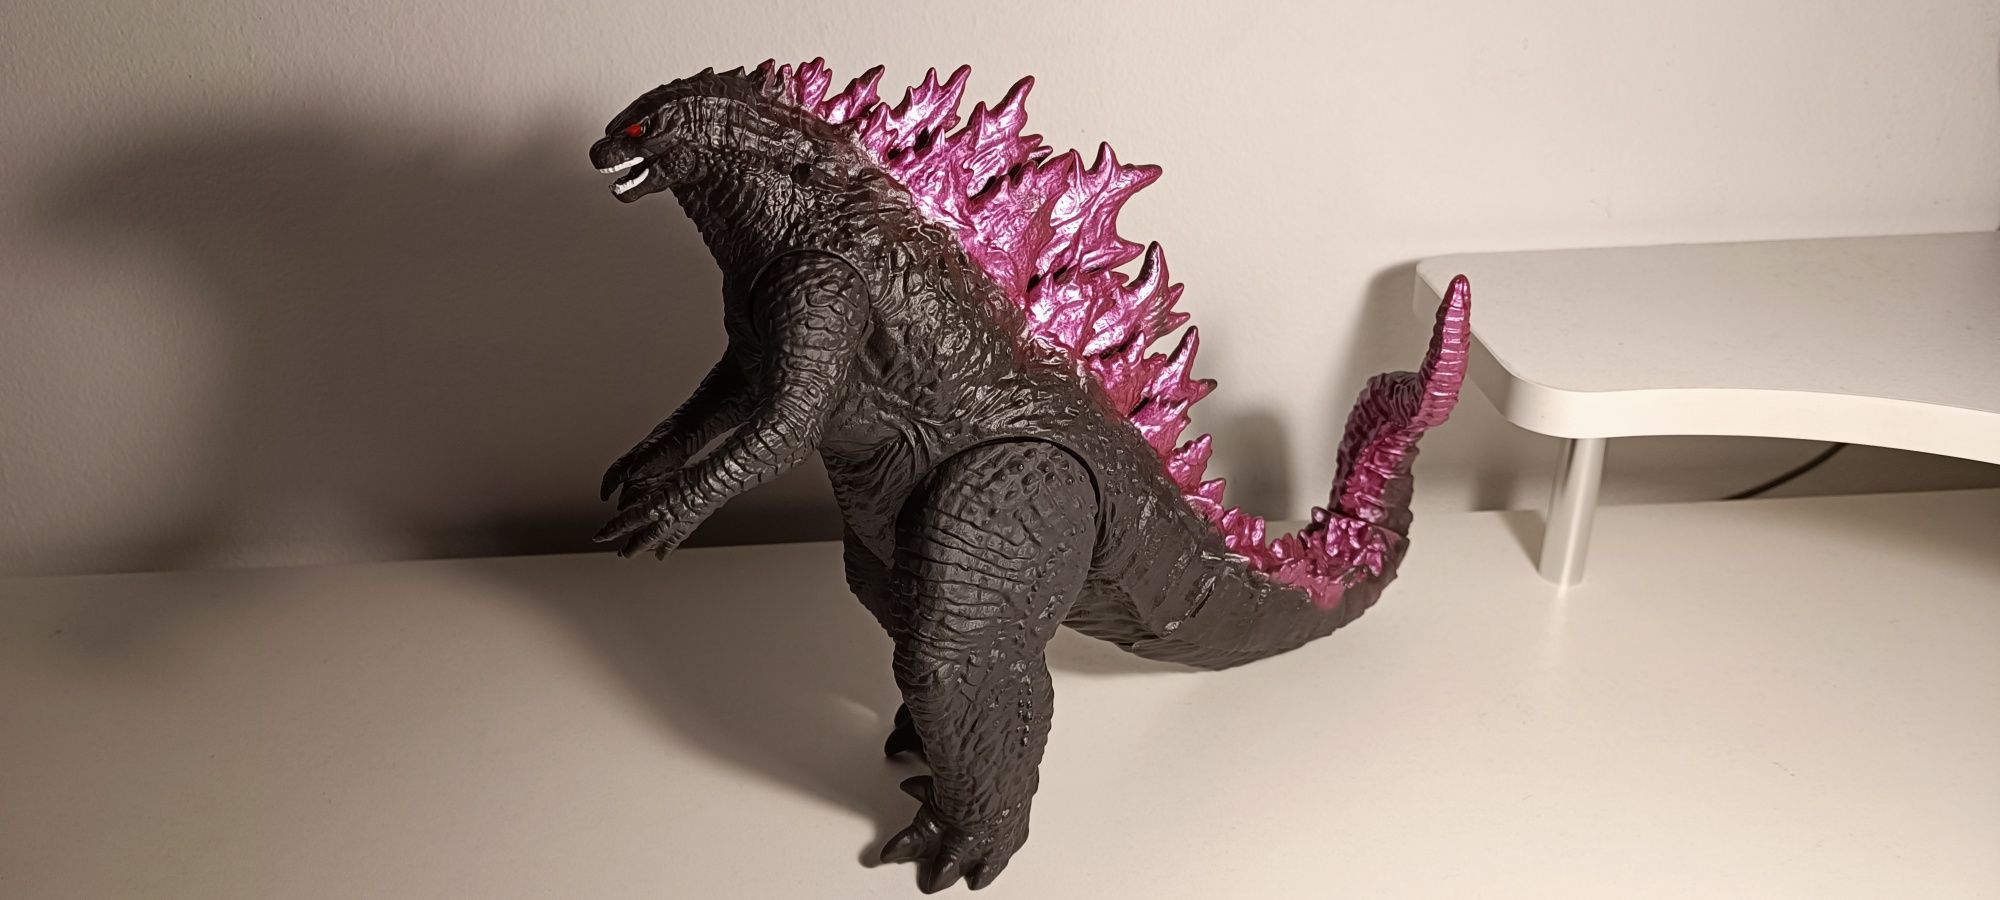 Boneco Godzilla 2024 articulado com 22 cm altura e 25 cm comprimento